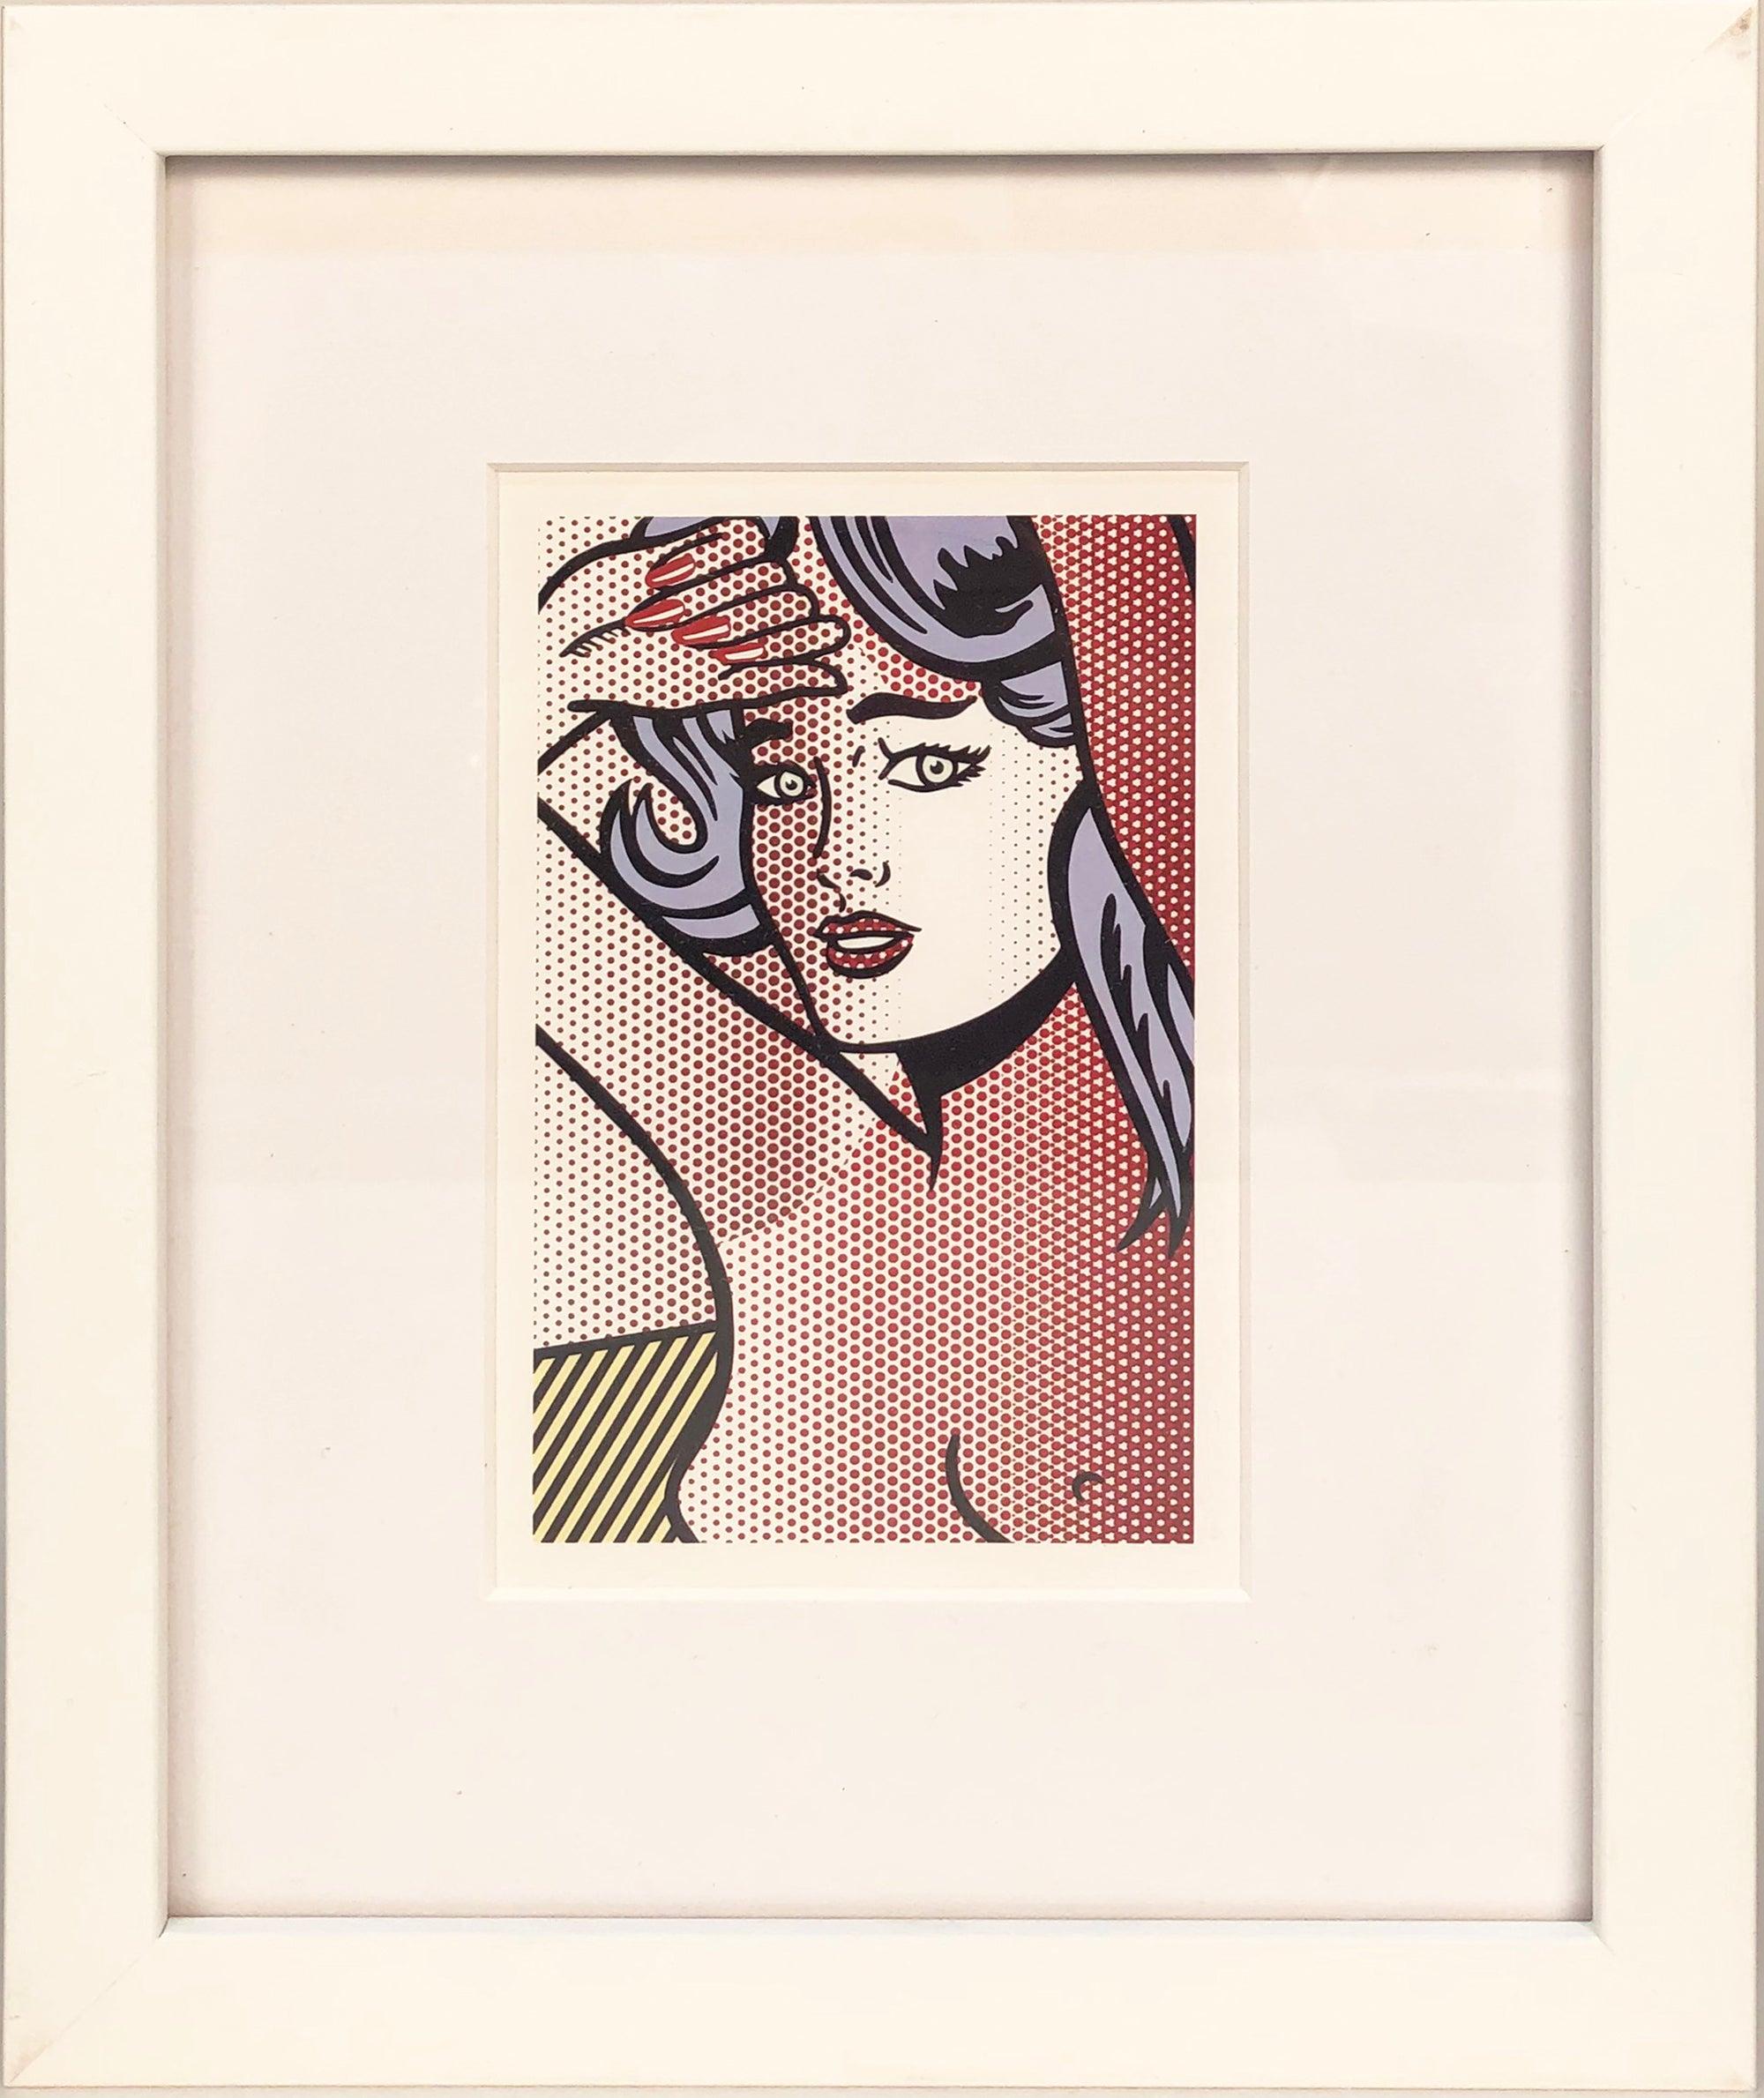 1997 Roy Lichtenstein 'Nude with Blue Hair' Invitation Framed - Print by (after) Roy Lichtenstein